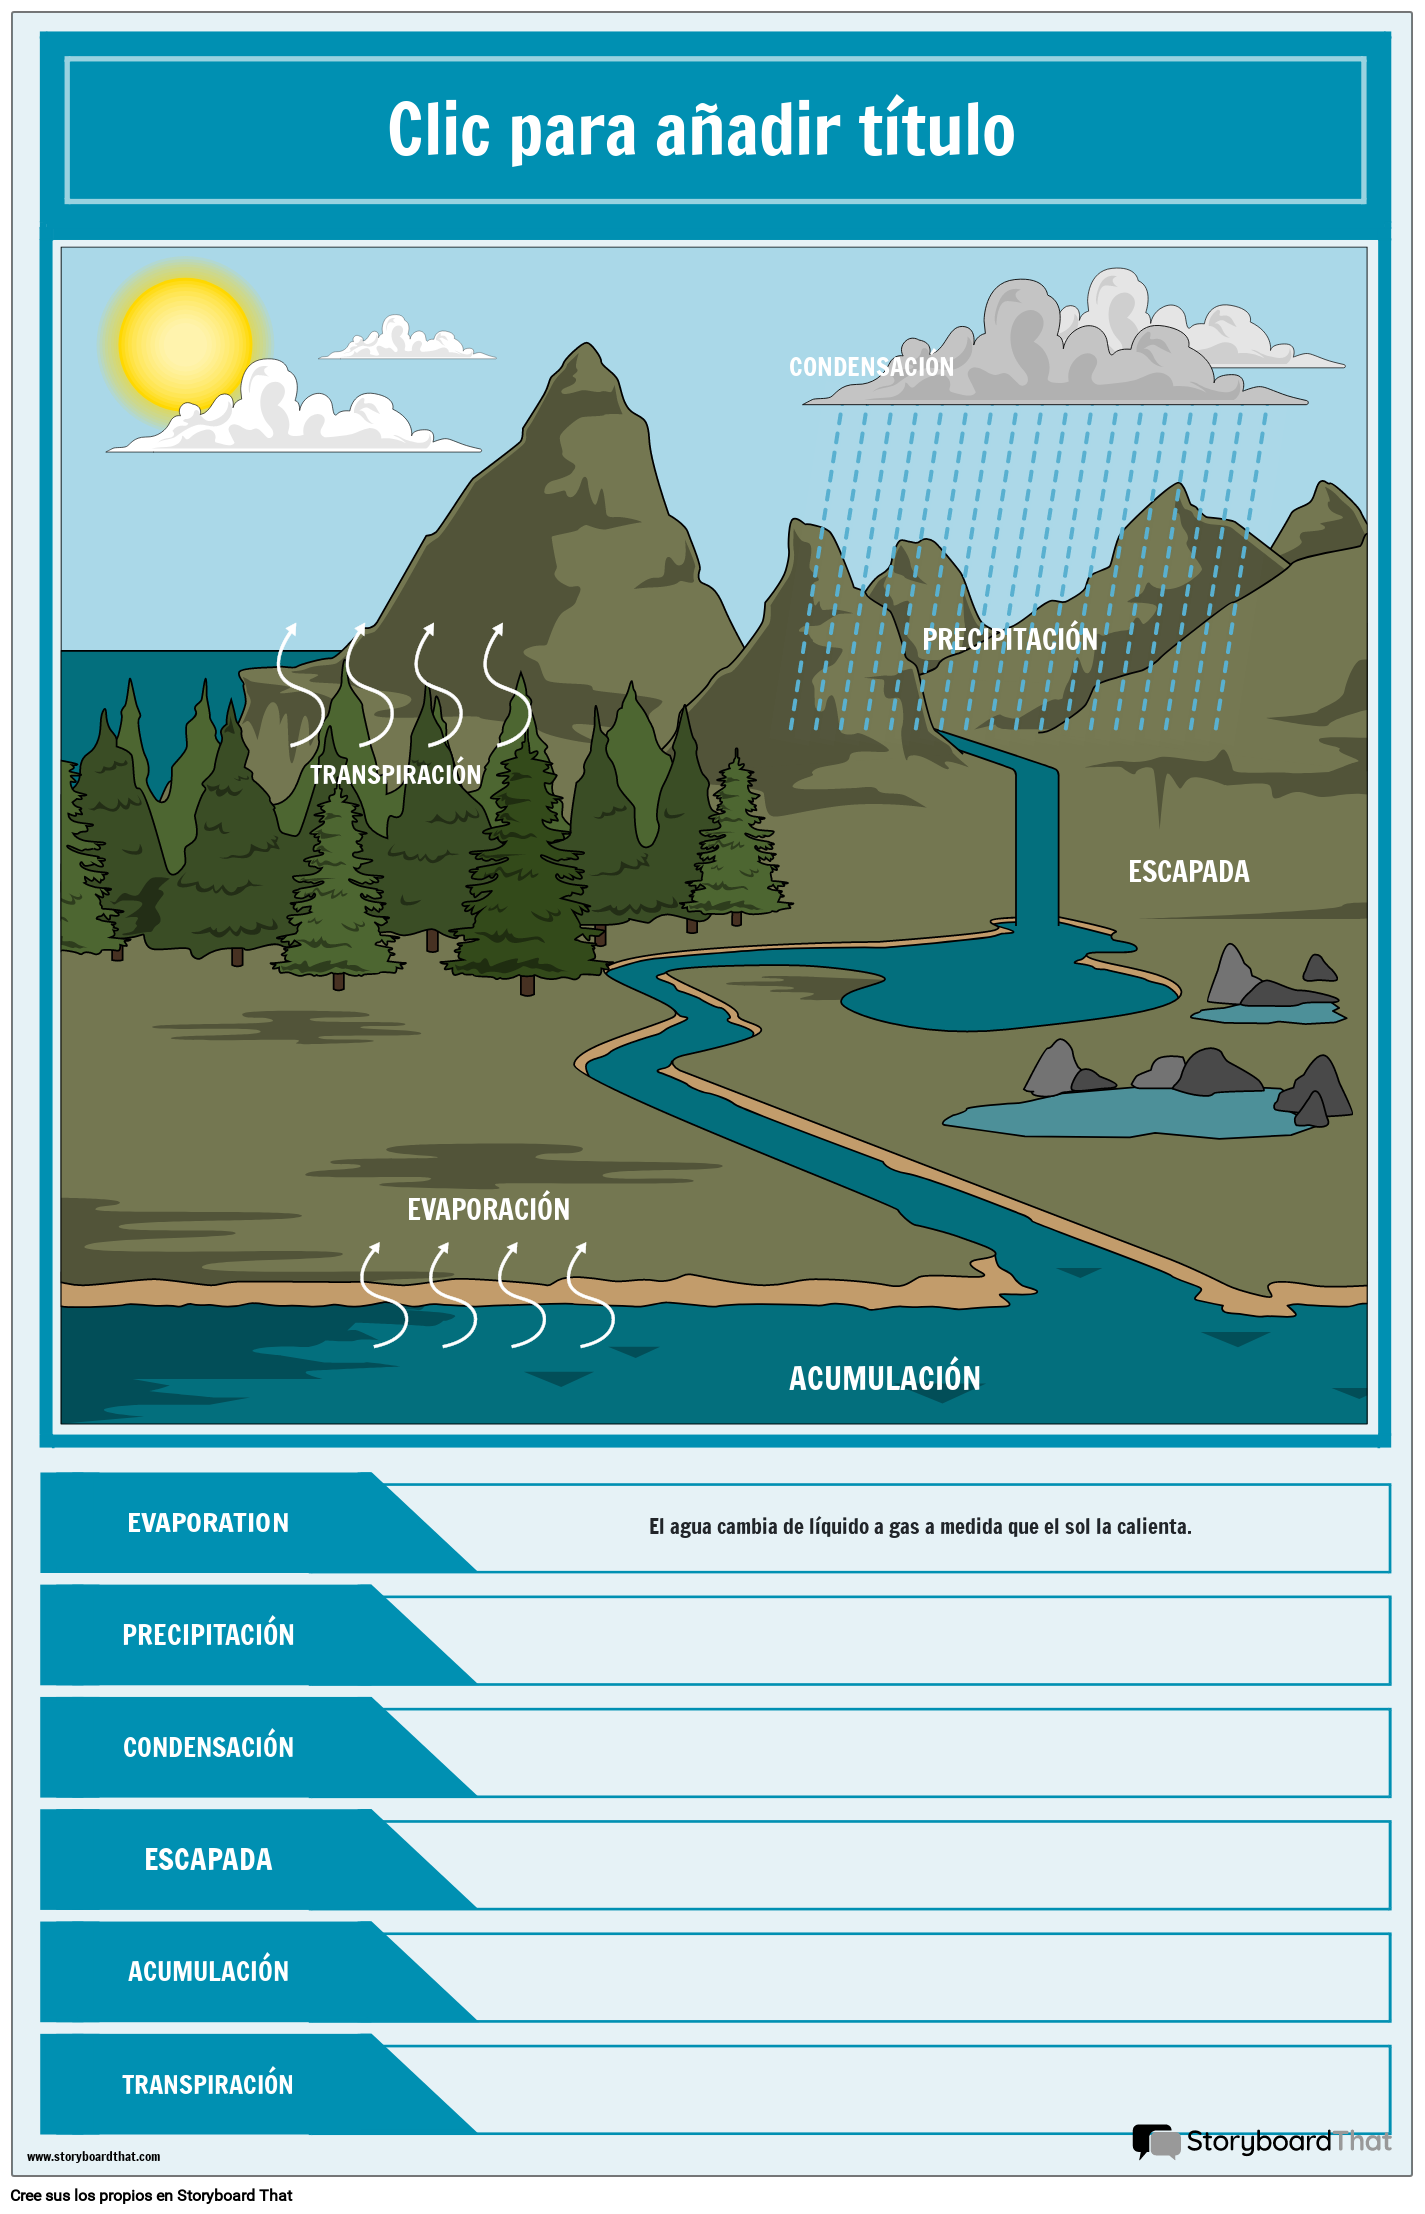 Diagrama que muestra la plantilla editable del cartel del ciclo del agua